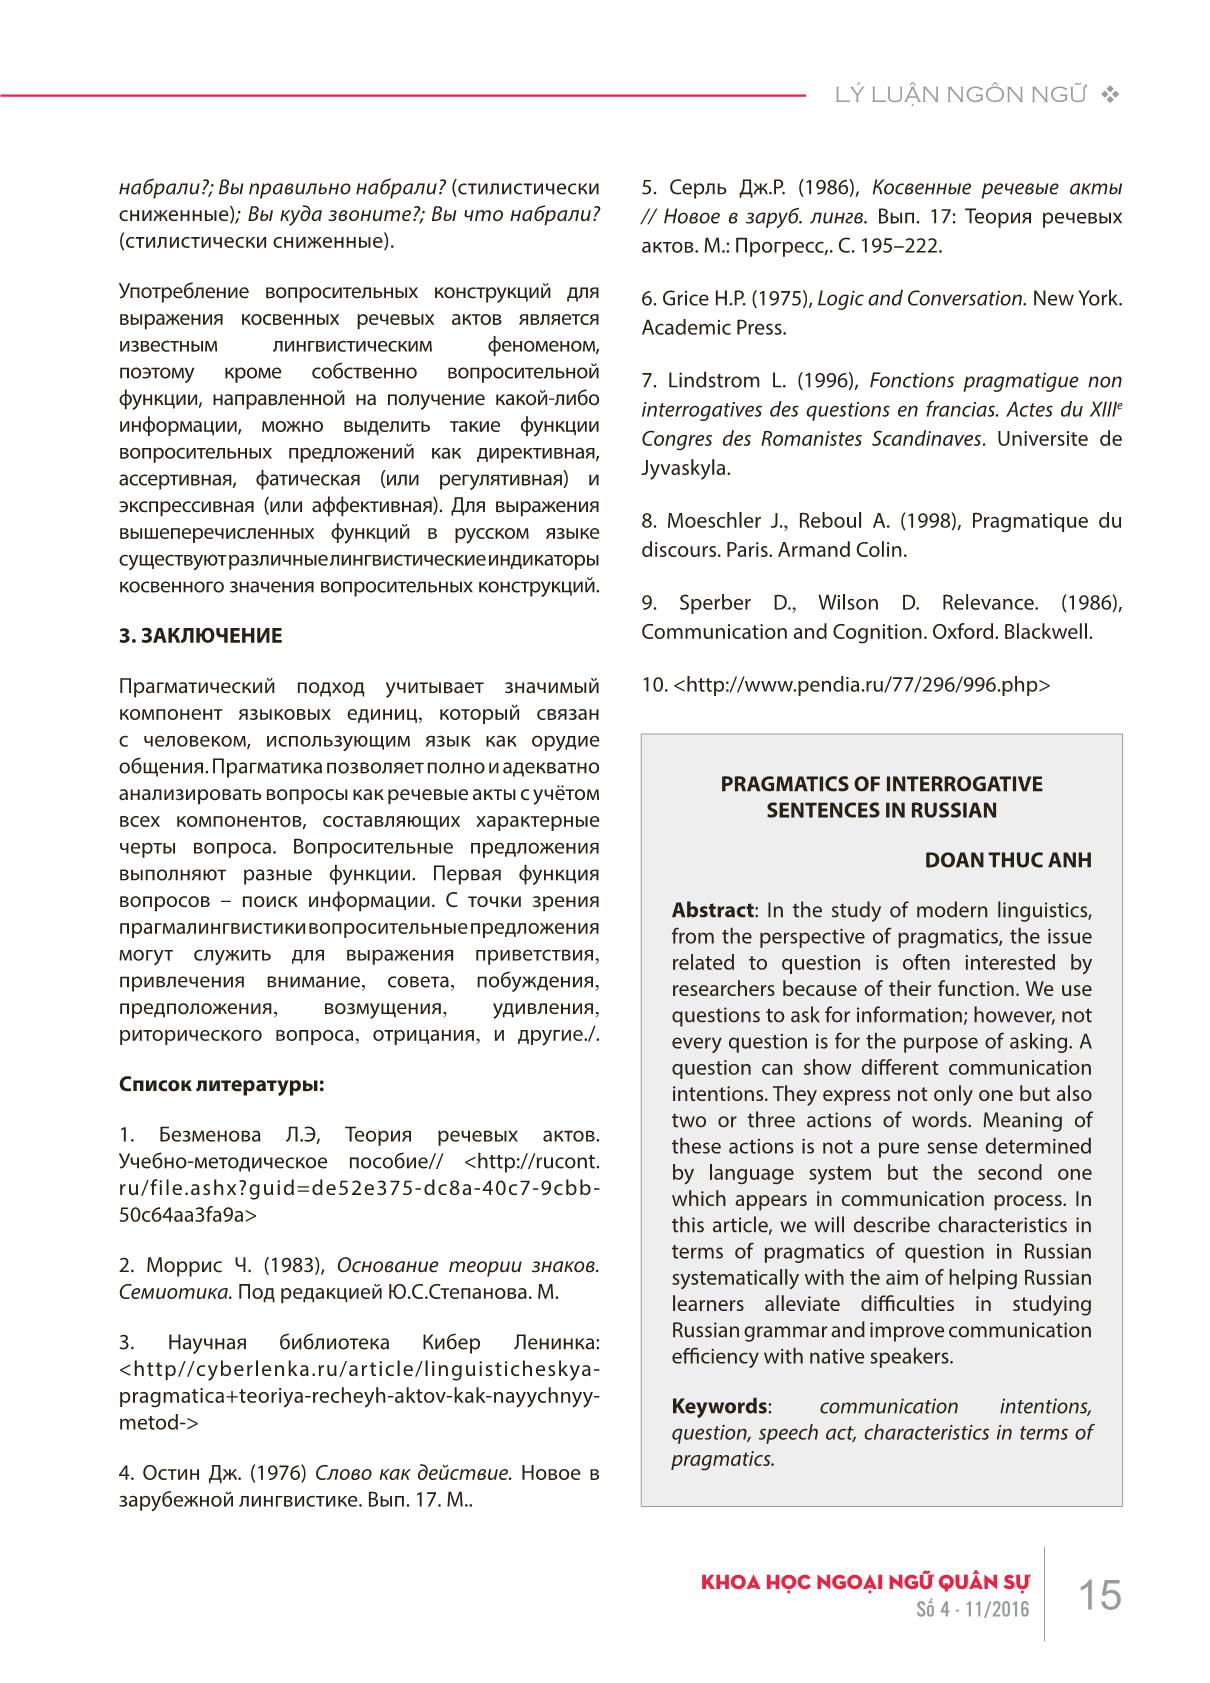 Bình diện ngữ dụng của câu nghi vấn trong tiếng Nga trang 5